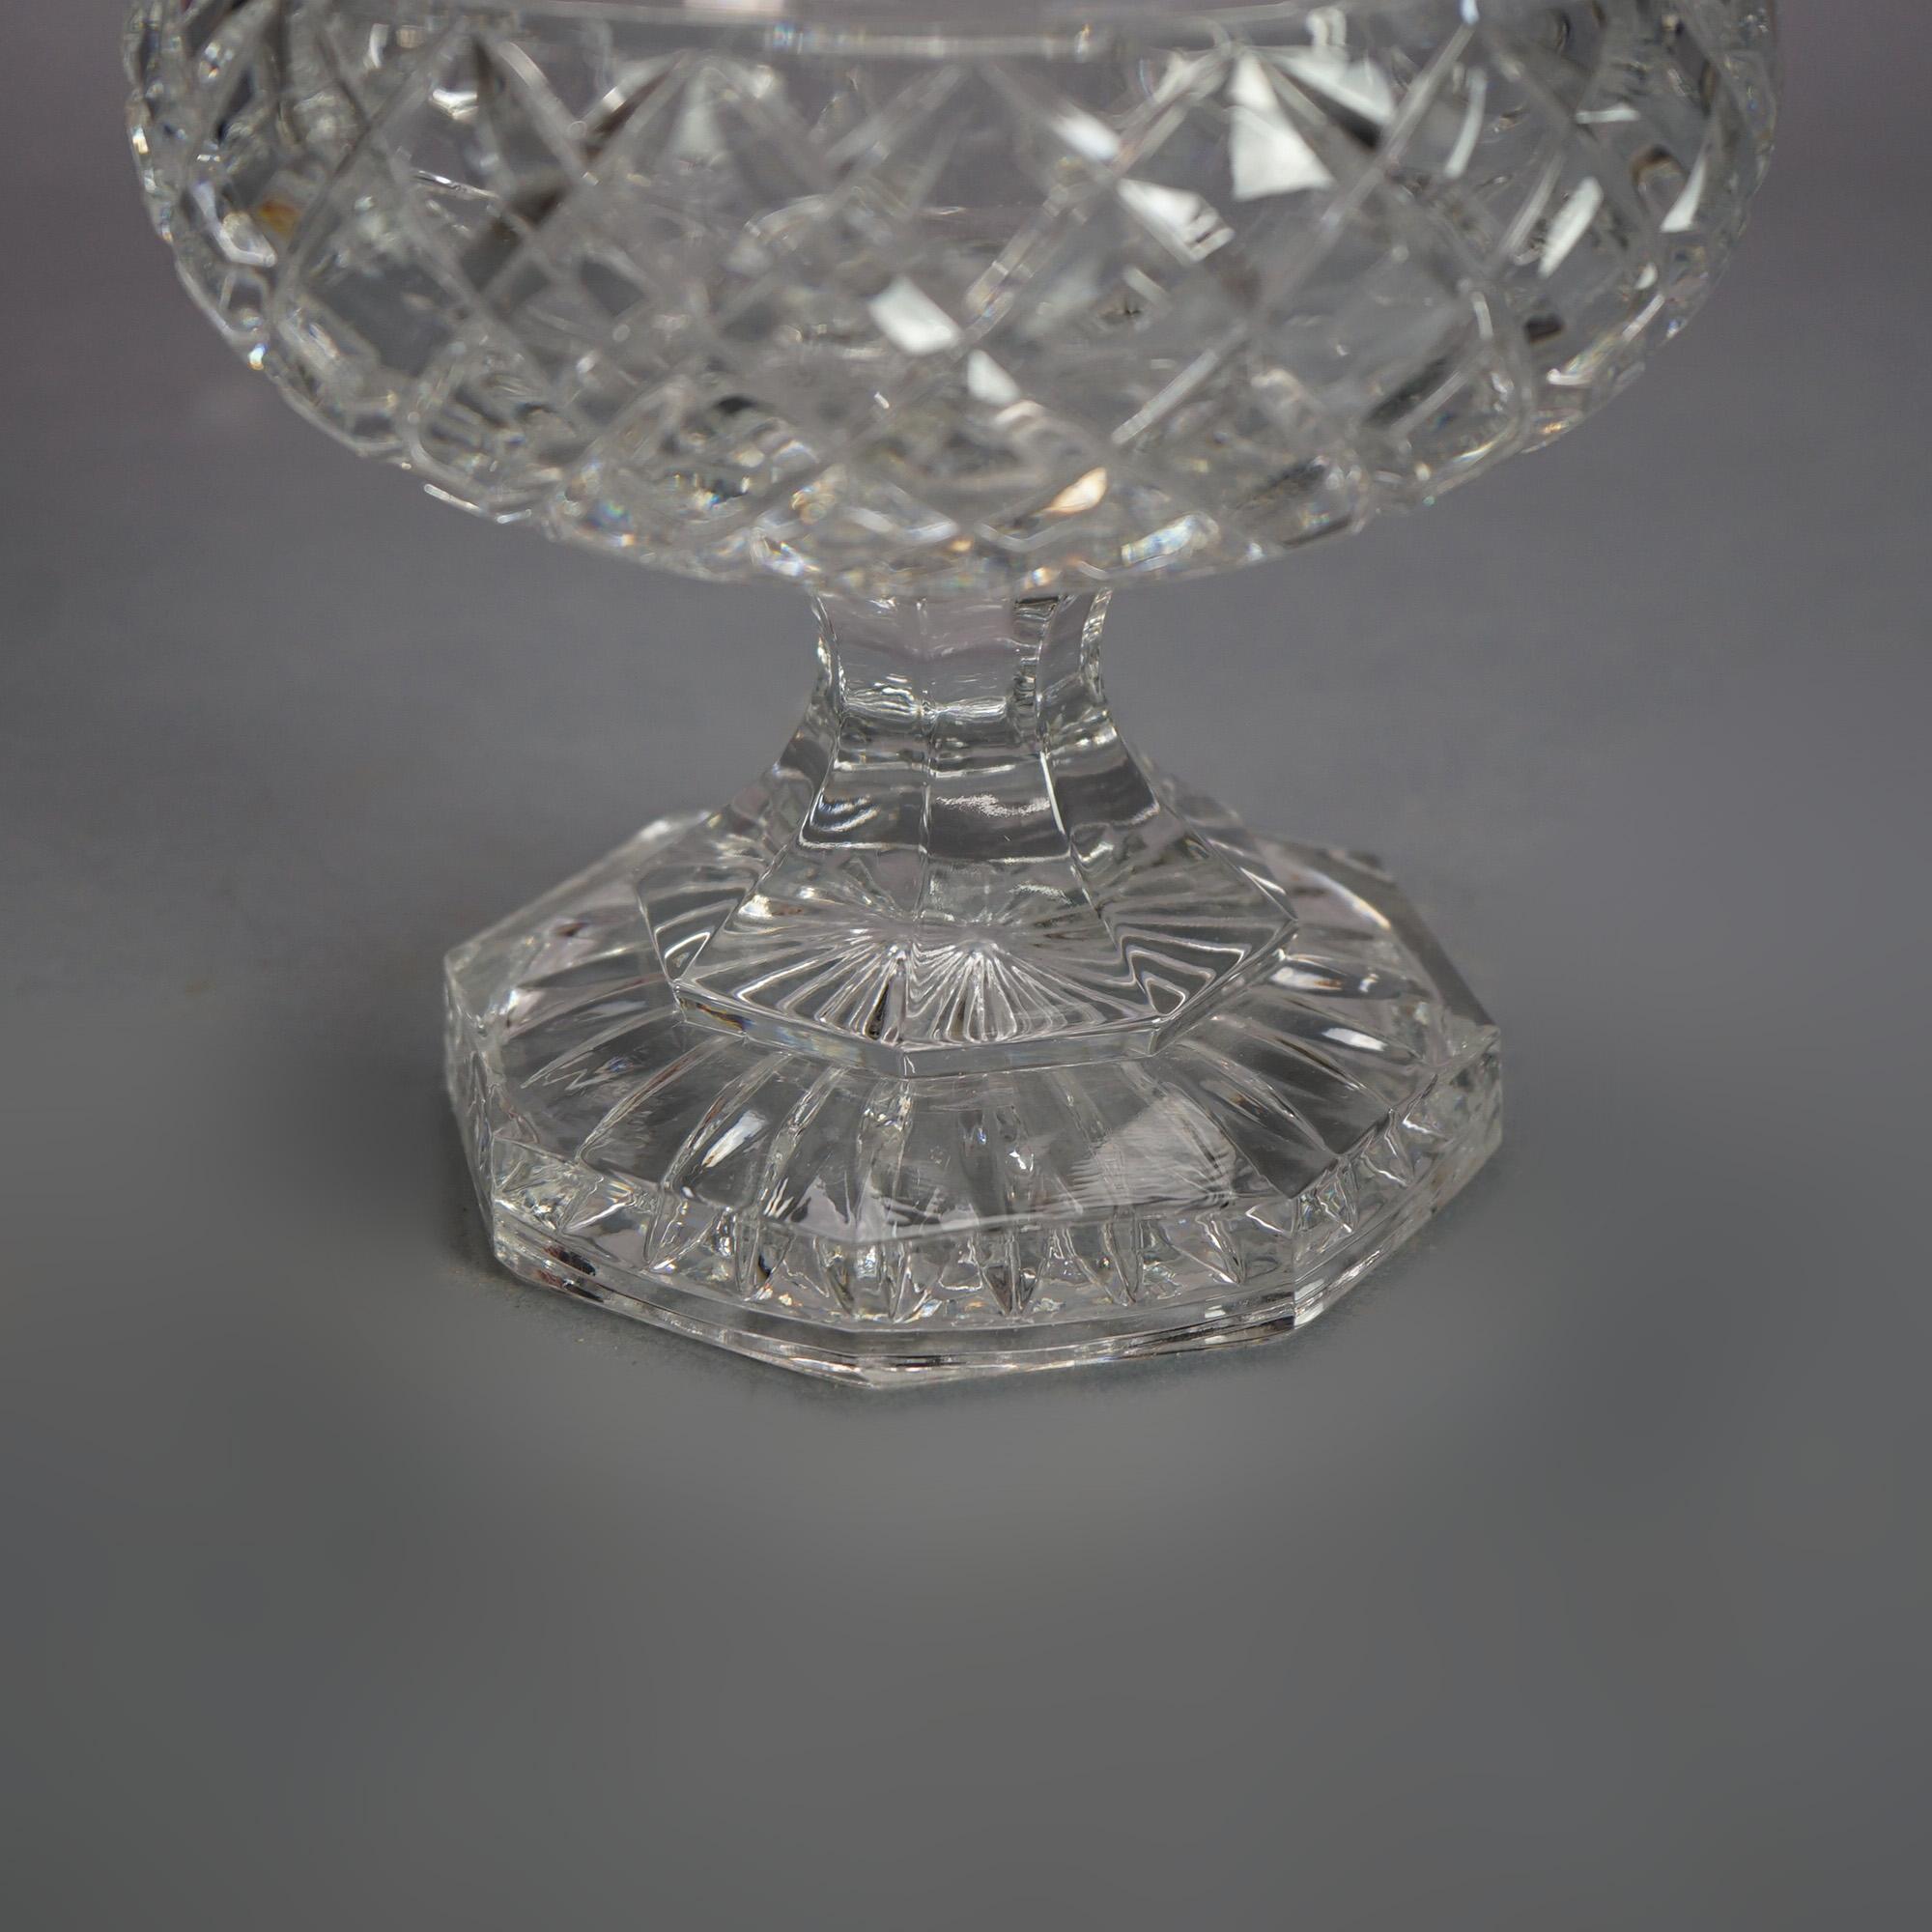 Manner of Steuben Engraved Crystal GTE Trophy Award Cup Vase C1950

Measures - 8